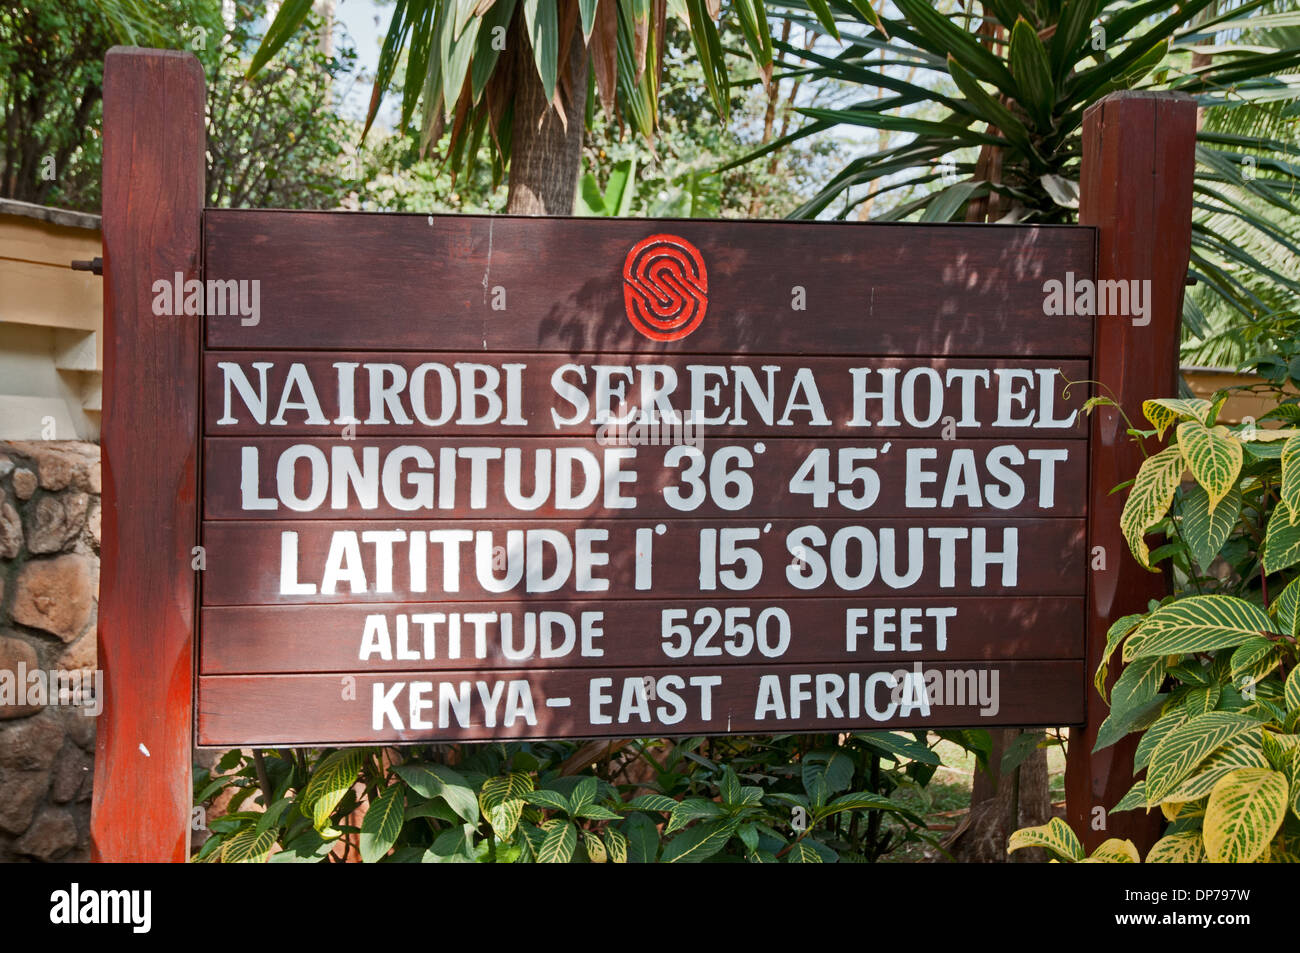 Schwarzes Brett am Eingang zum Nairobi Serena Hotel Nairobi Kenia Afrika zeigt Details Höhe Längen-und Breitengrade Stockfoto